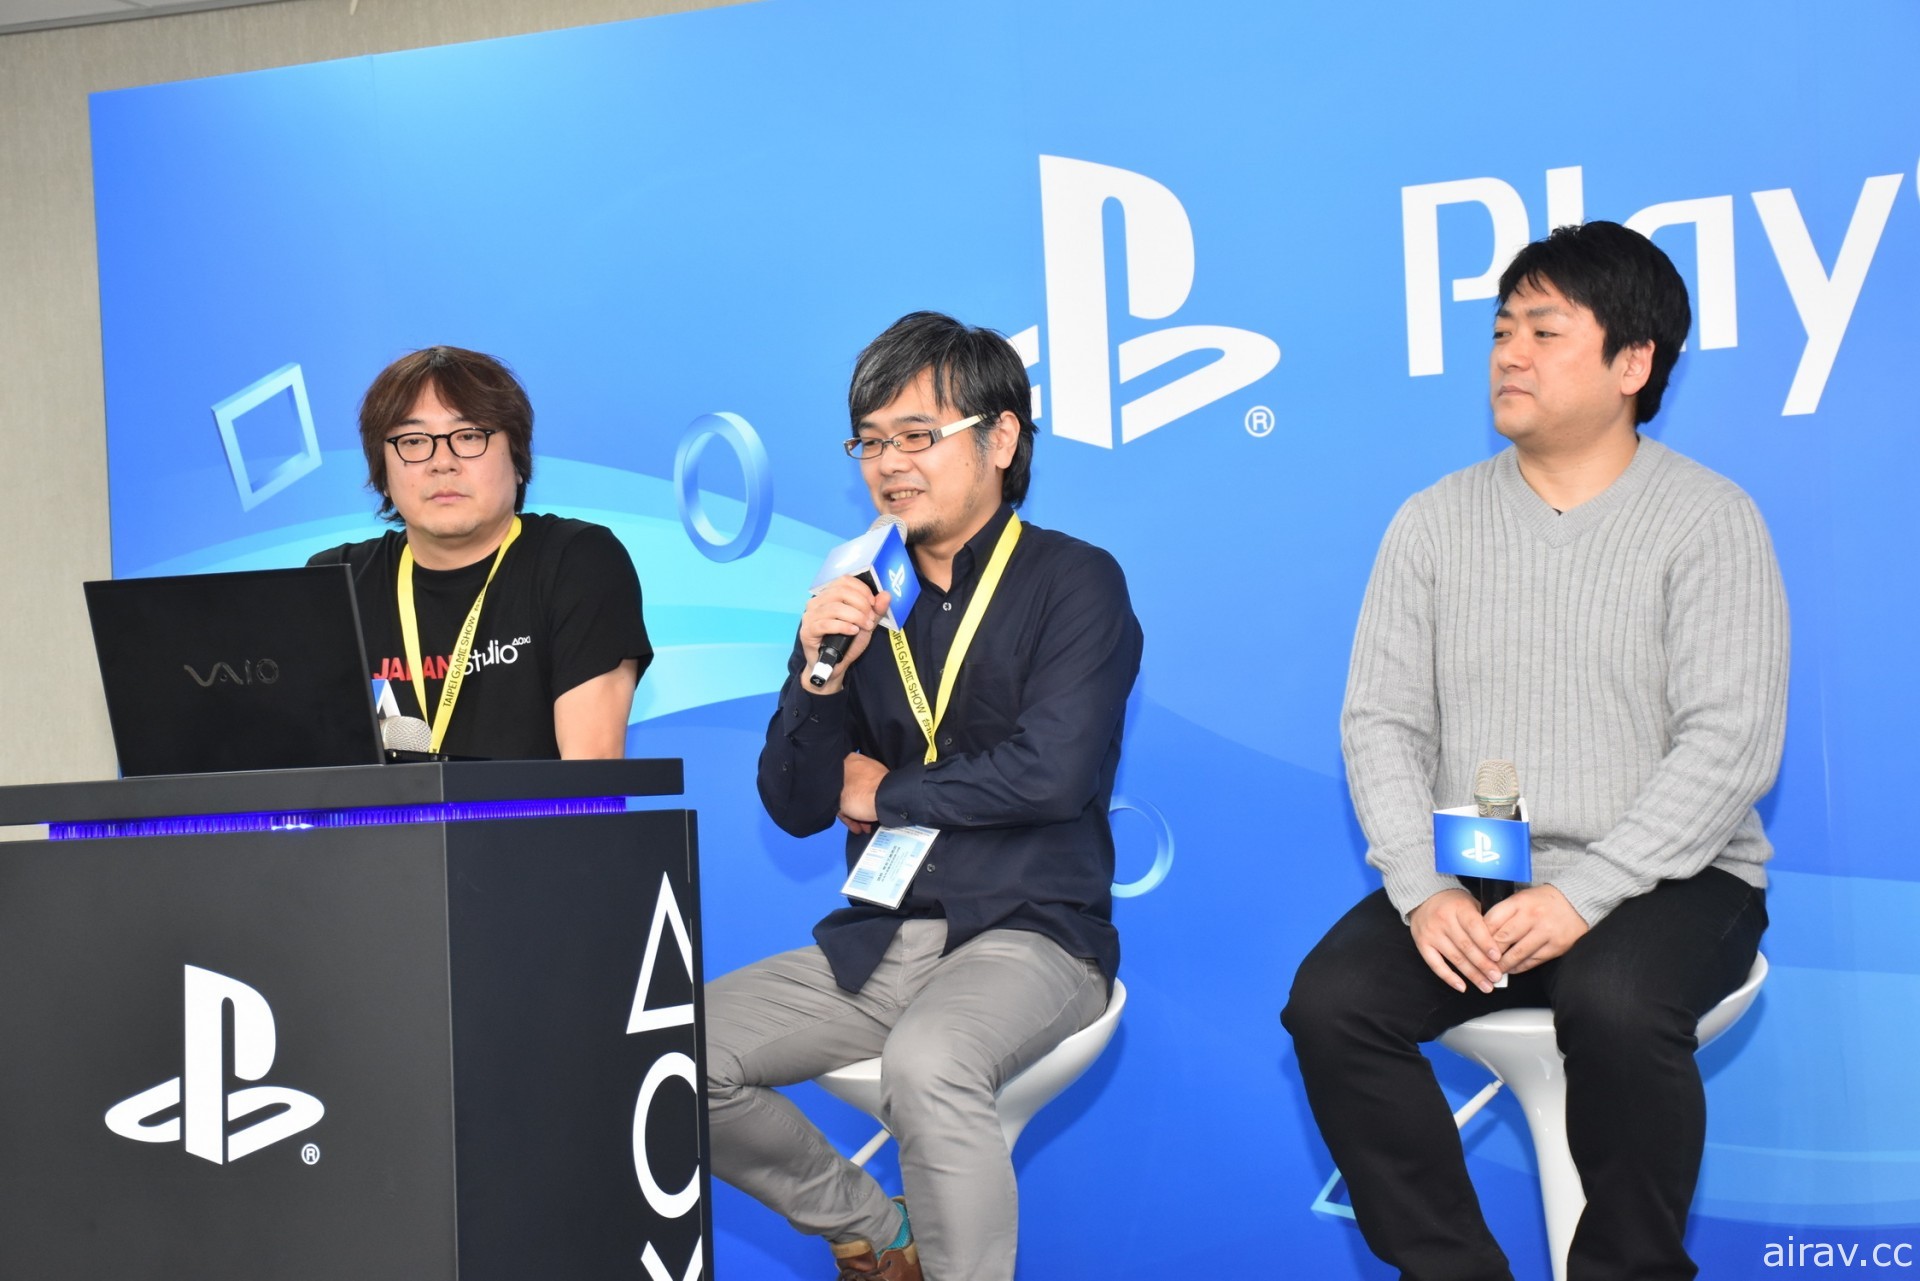 SIE 日本工作室外部製作部長山本正美宣布離職 曾經手《天誅》等遊戲製作